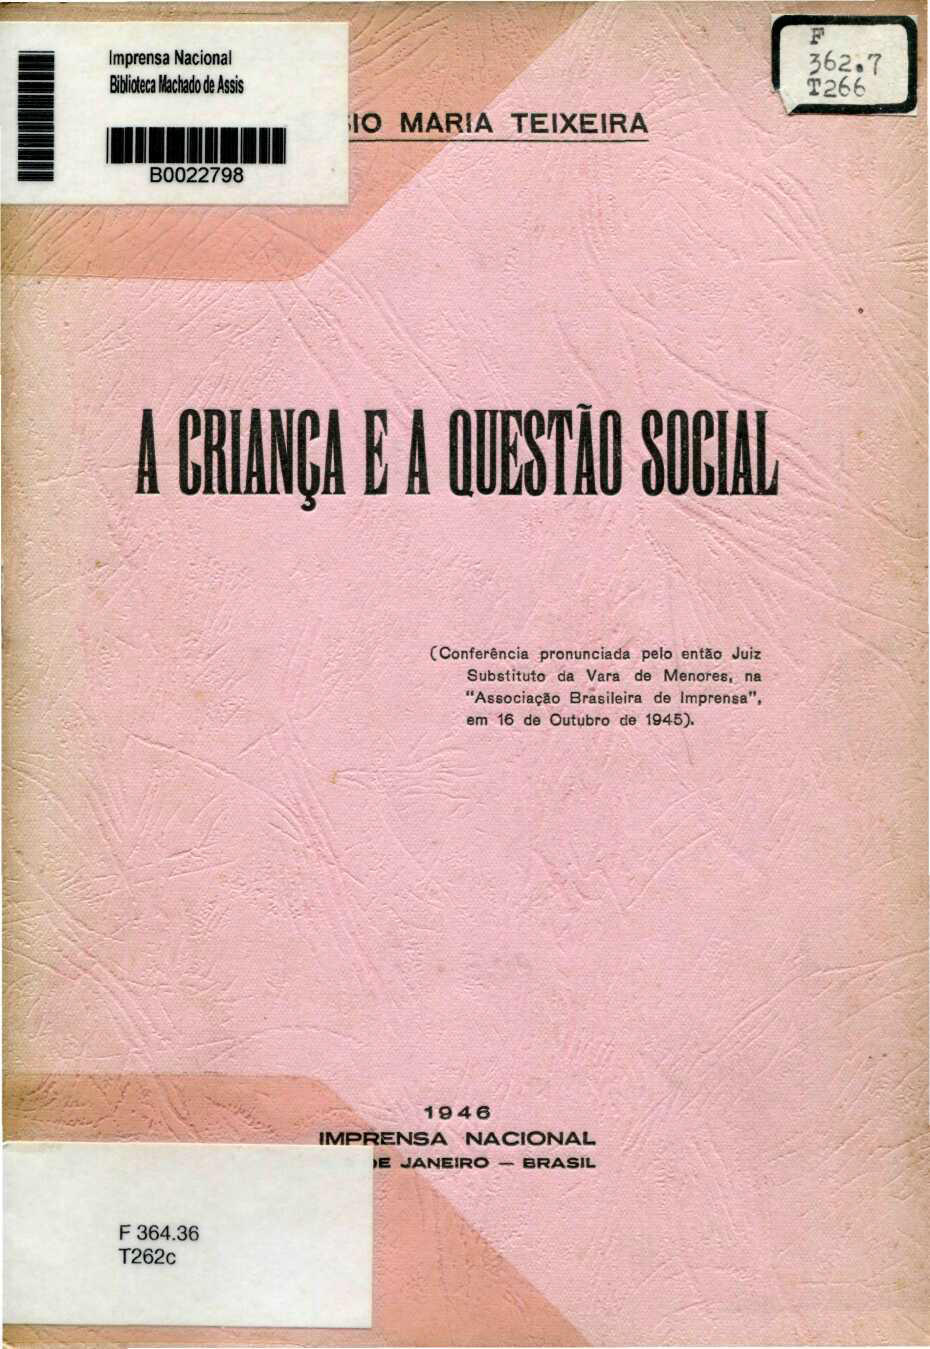 Capa do Livro A Criança e a Questão Social